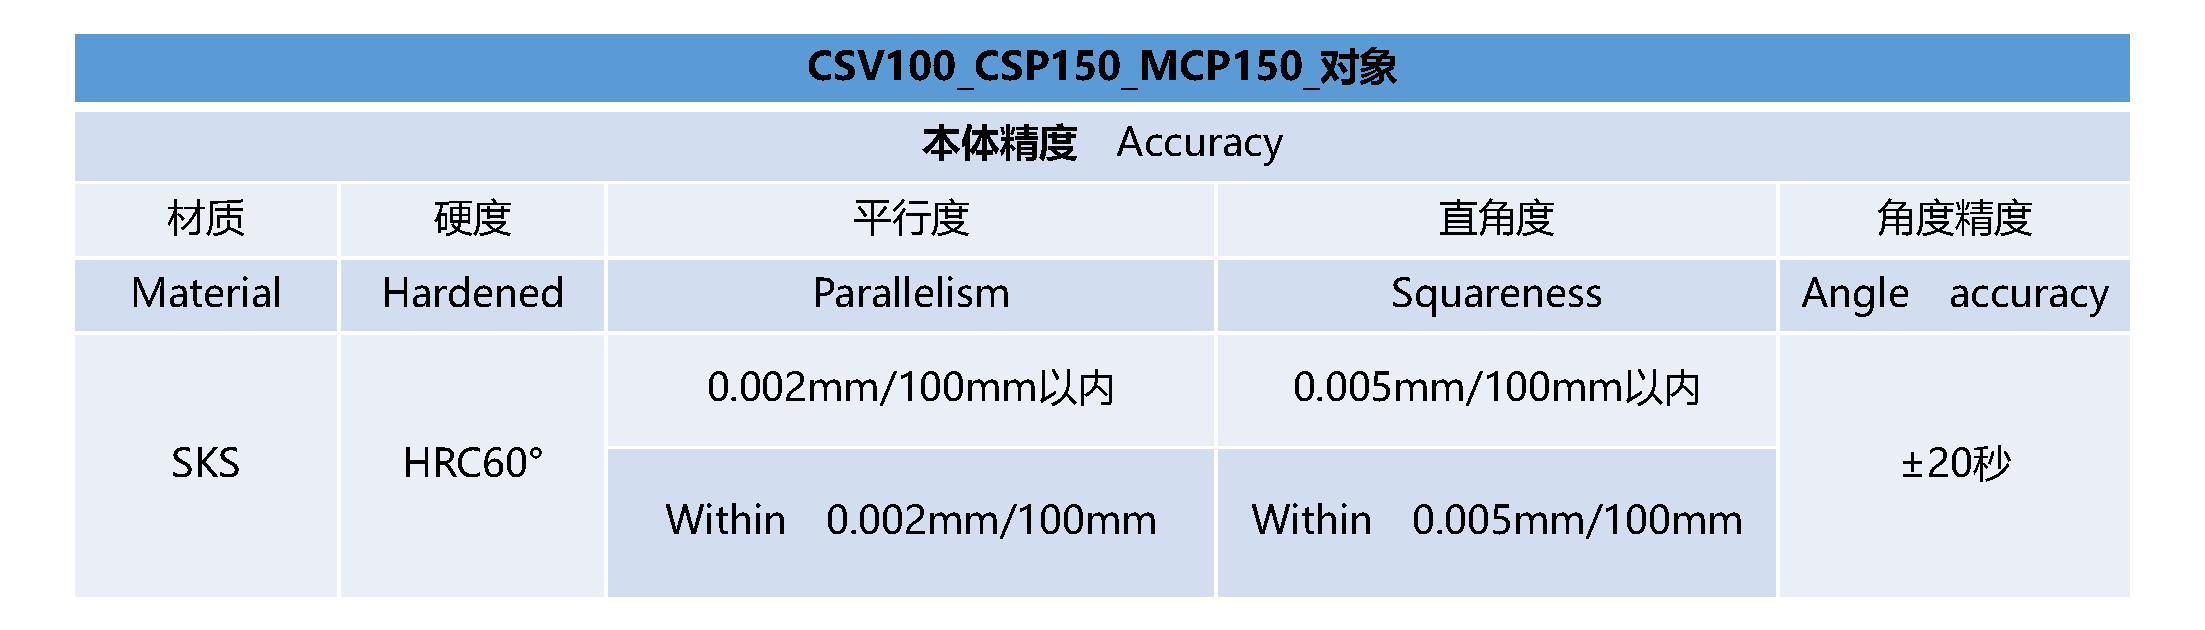 CSV100_CSP150_MCP150__精度表- 中文.png